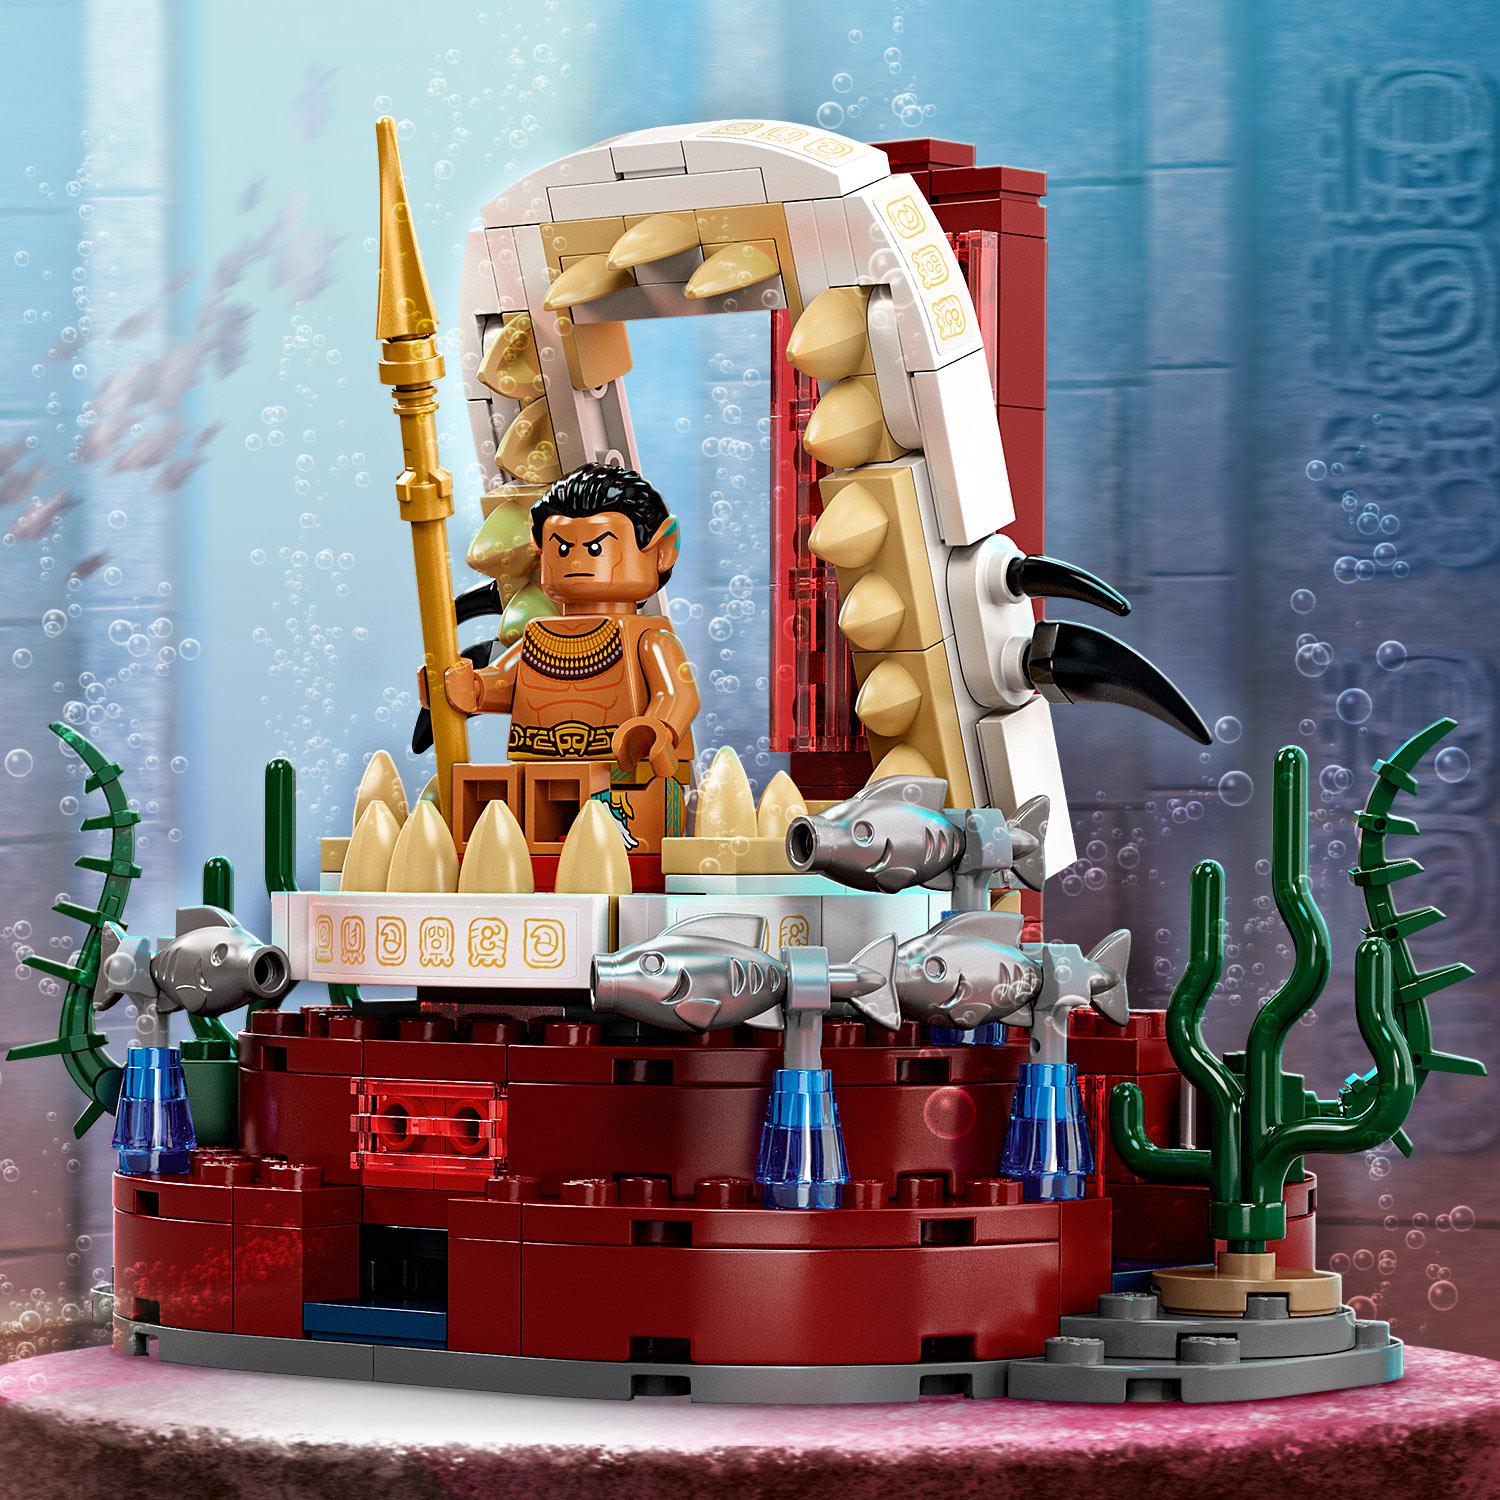 Selected image for LEGO Kocke Prestona soba kralja Namora 76213